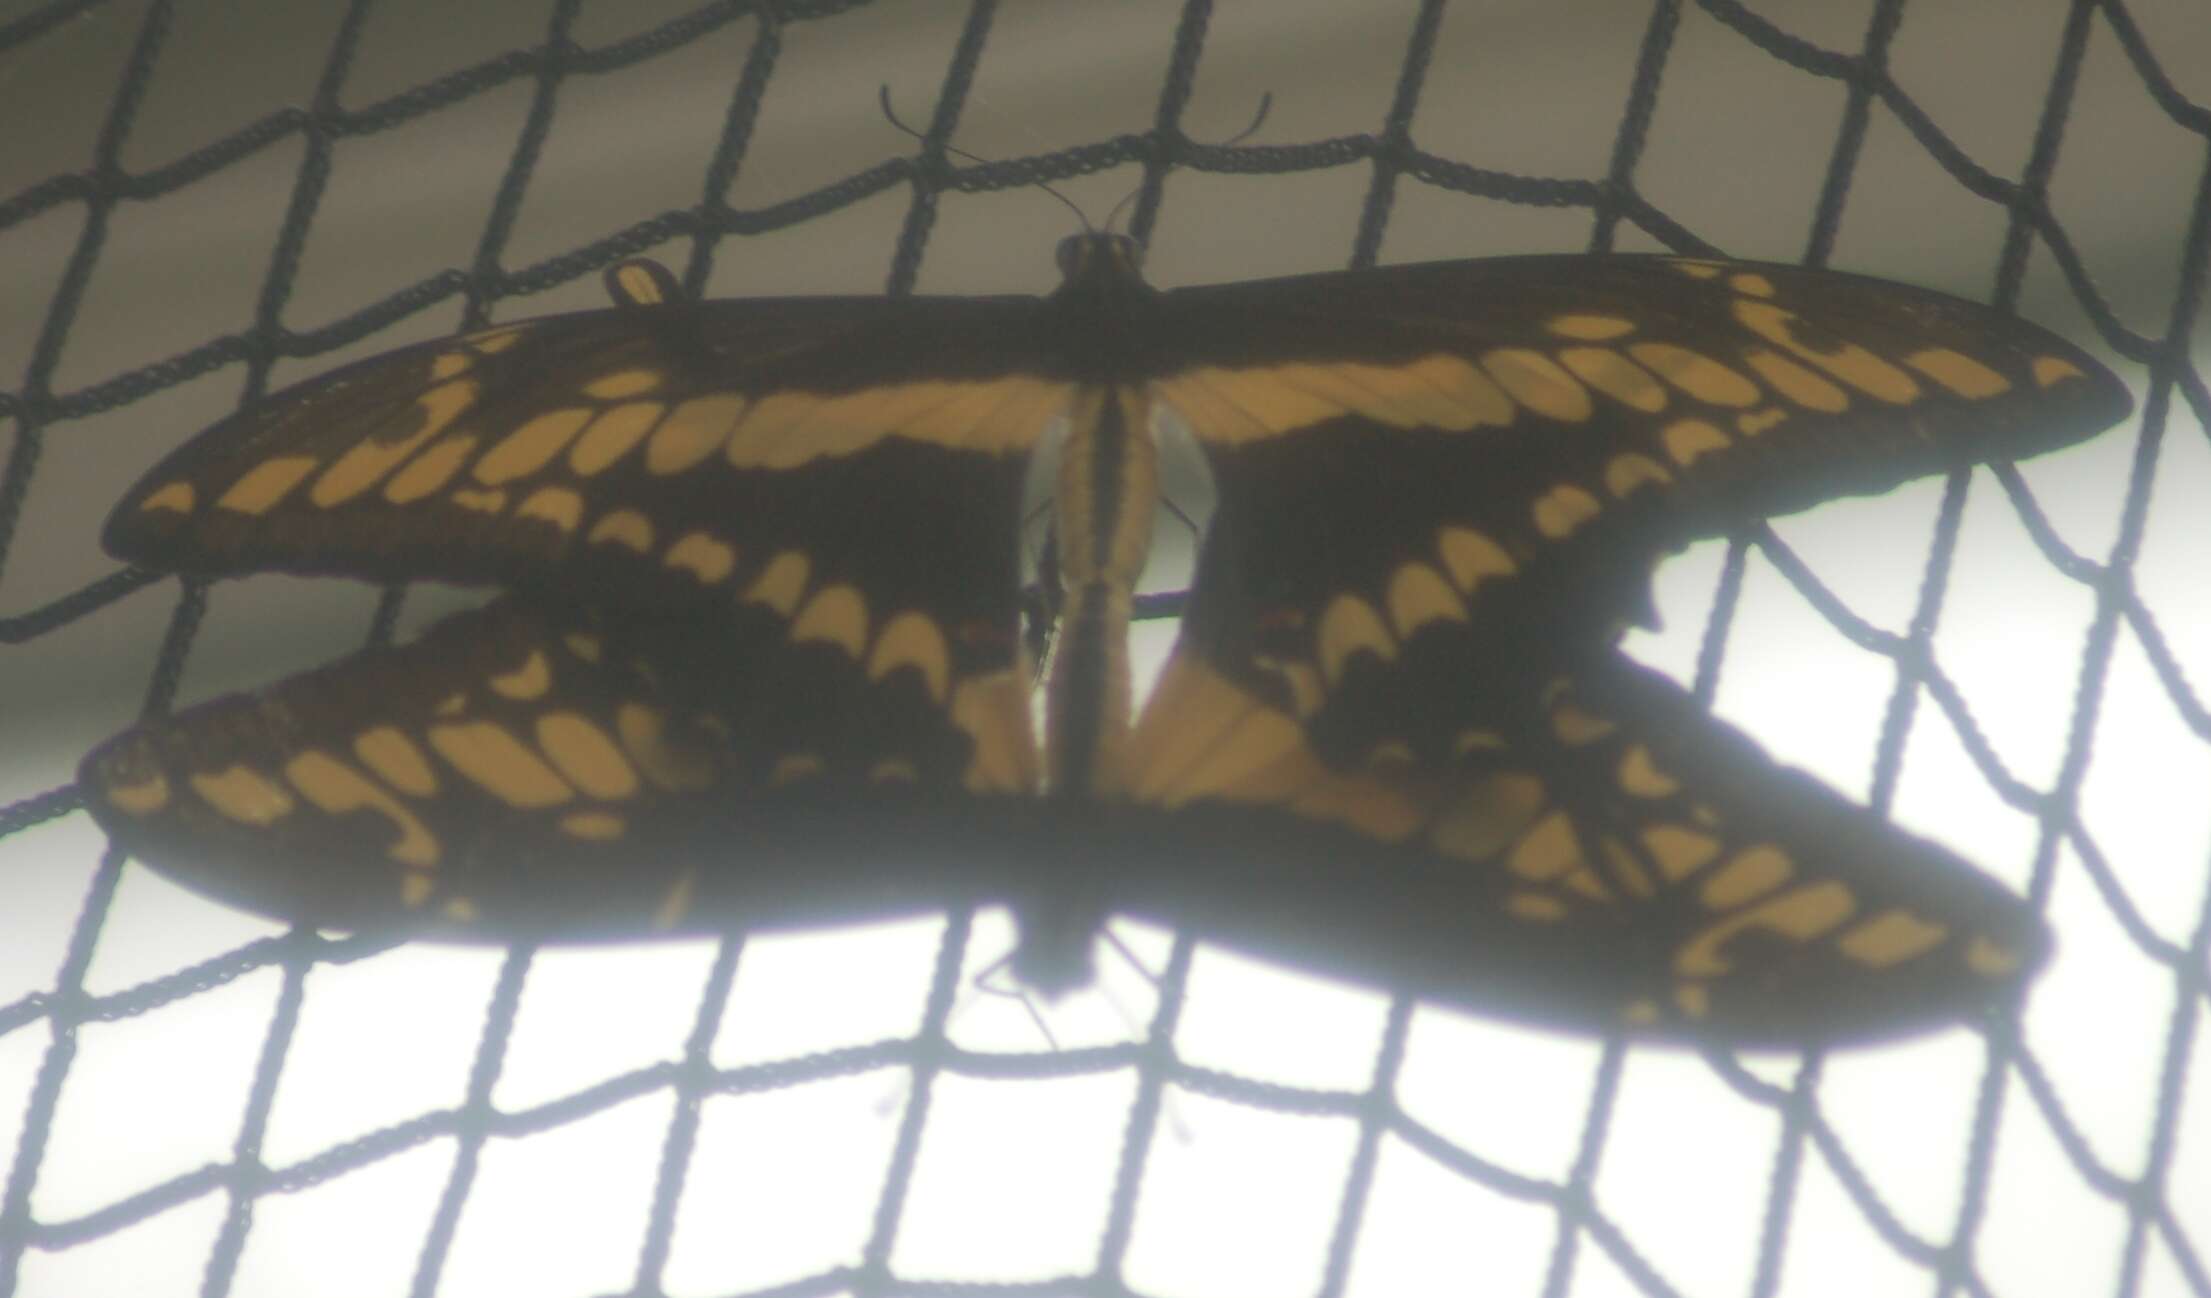 Sivun Papilio thoas Linnaeus 1771 kuva